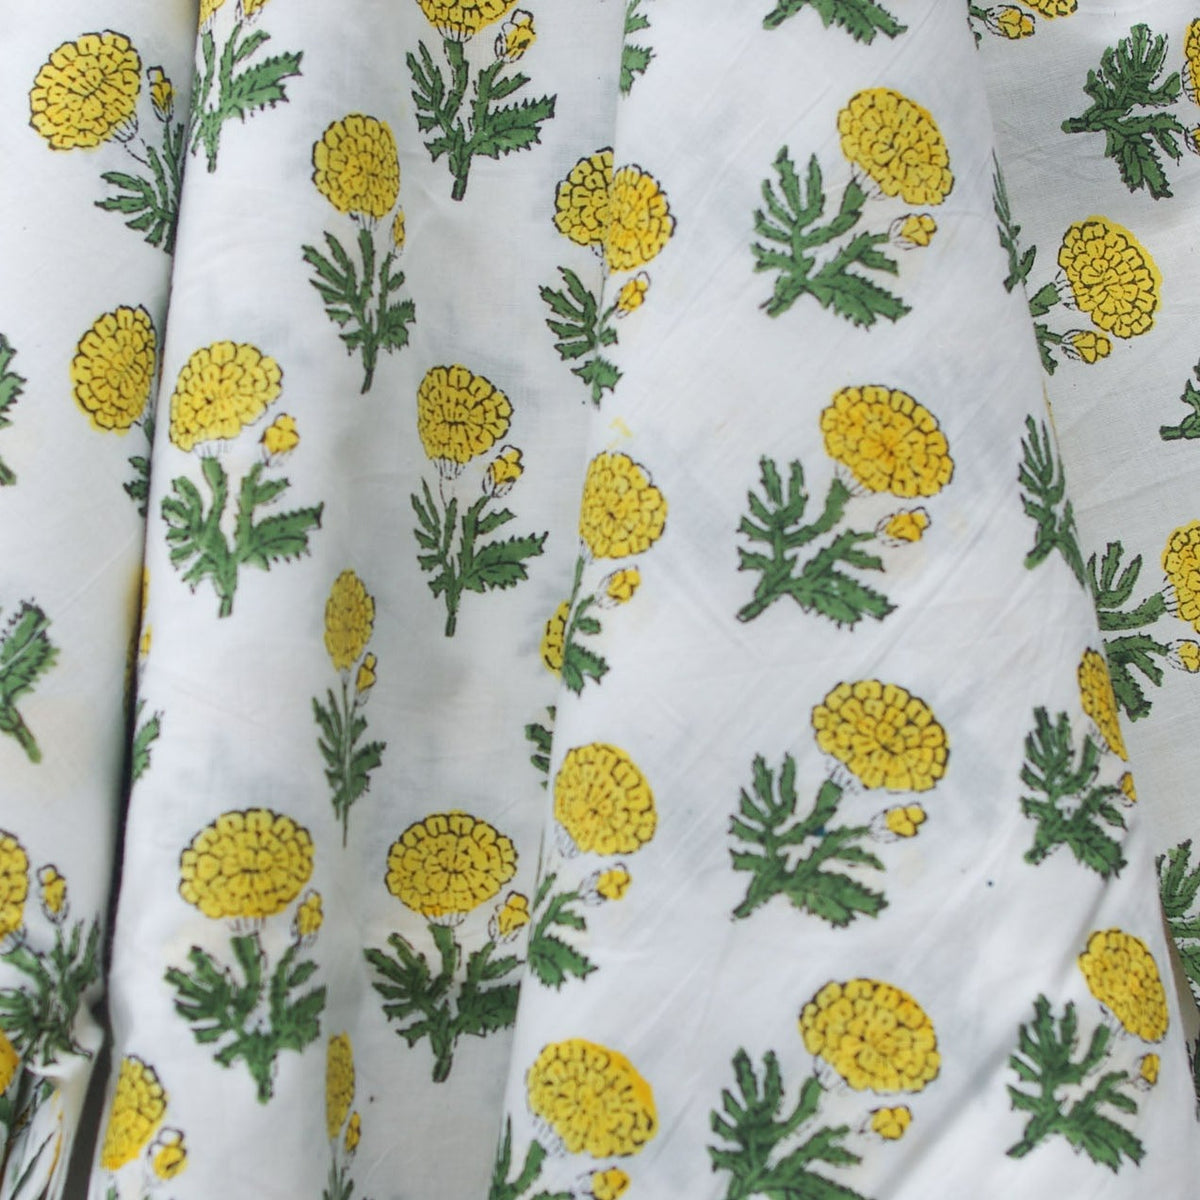 Indischer Handblockdruck, gelbe Ringelblumen, 100 % Baumwollstoff, Design 355